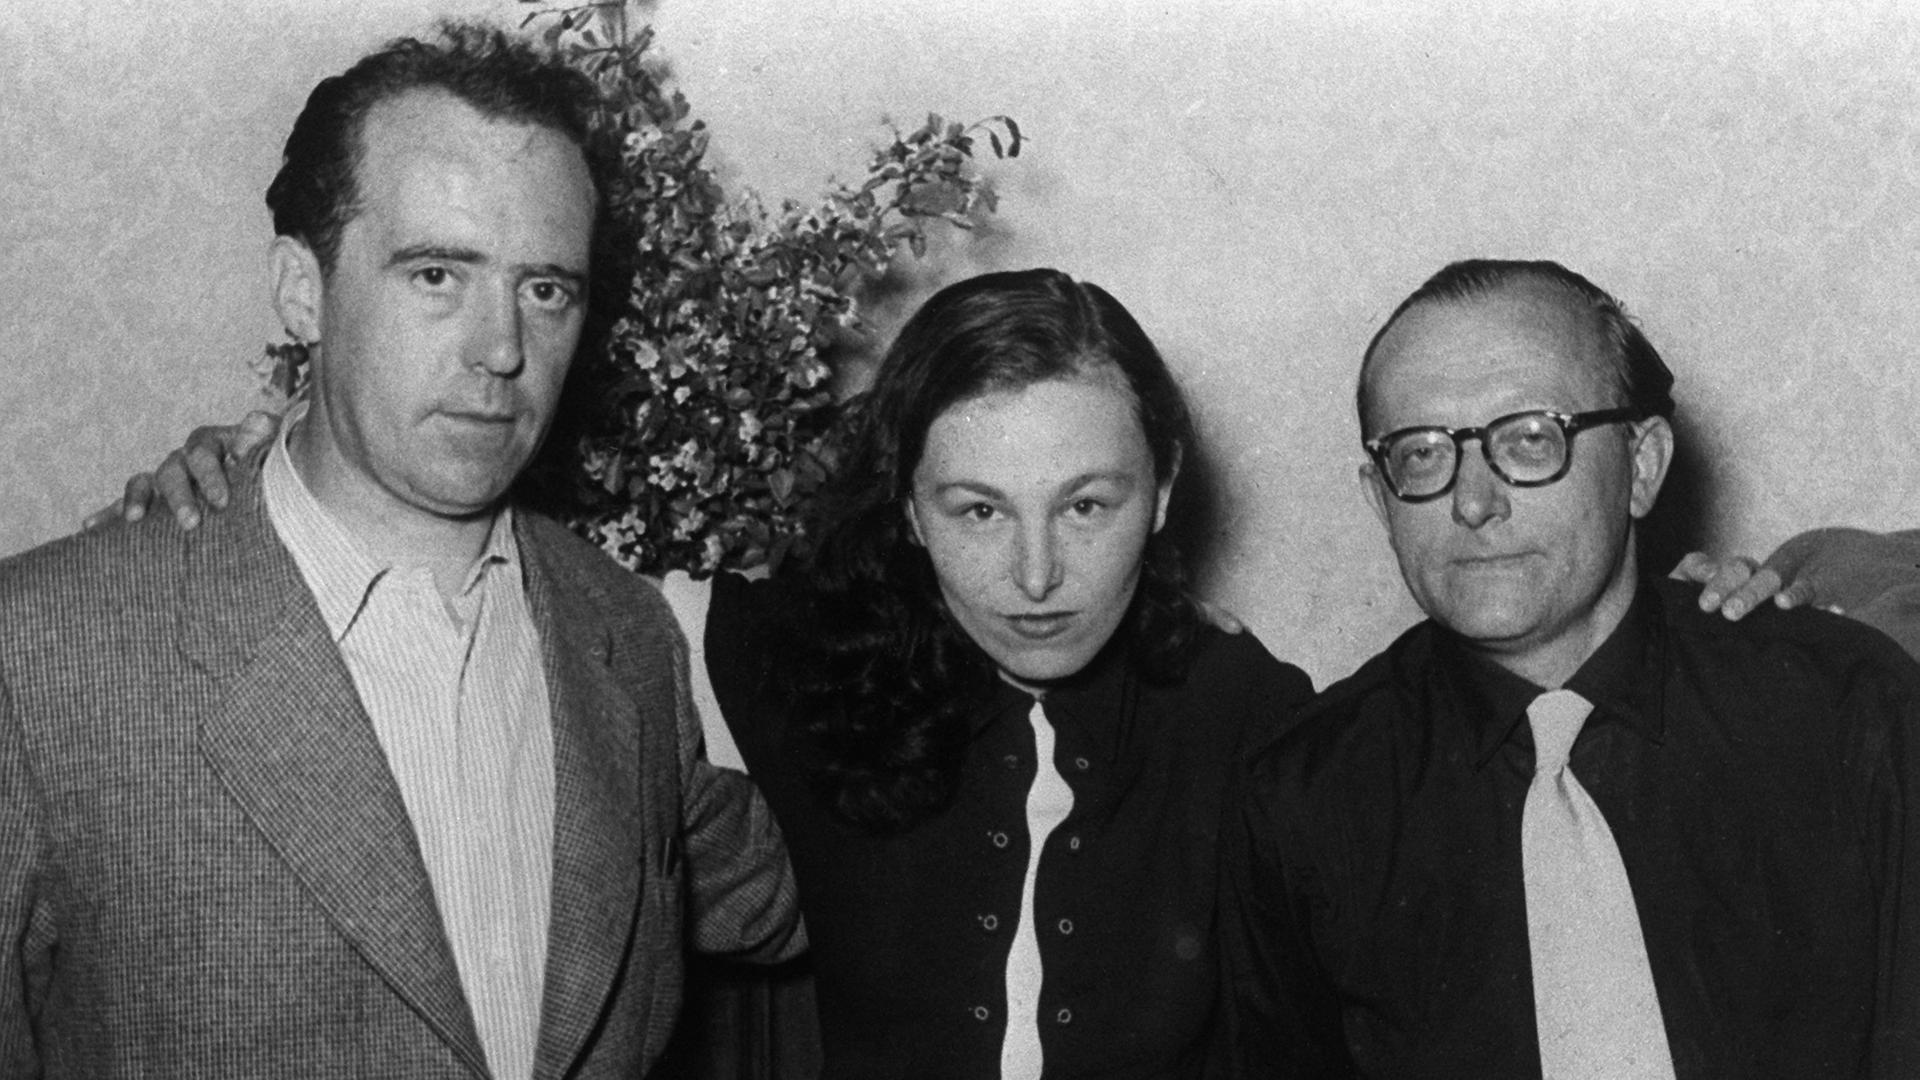 Heinrich Böll, Ilse Aichinger und Günther Eich (v.l.n.r.) 1952 während der Tagung der Schriftstellervereinigung "Gruppe 47".